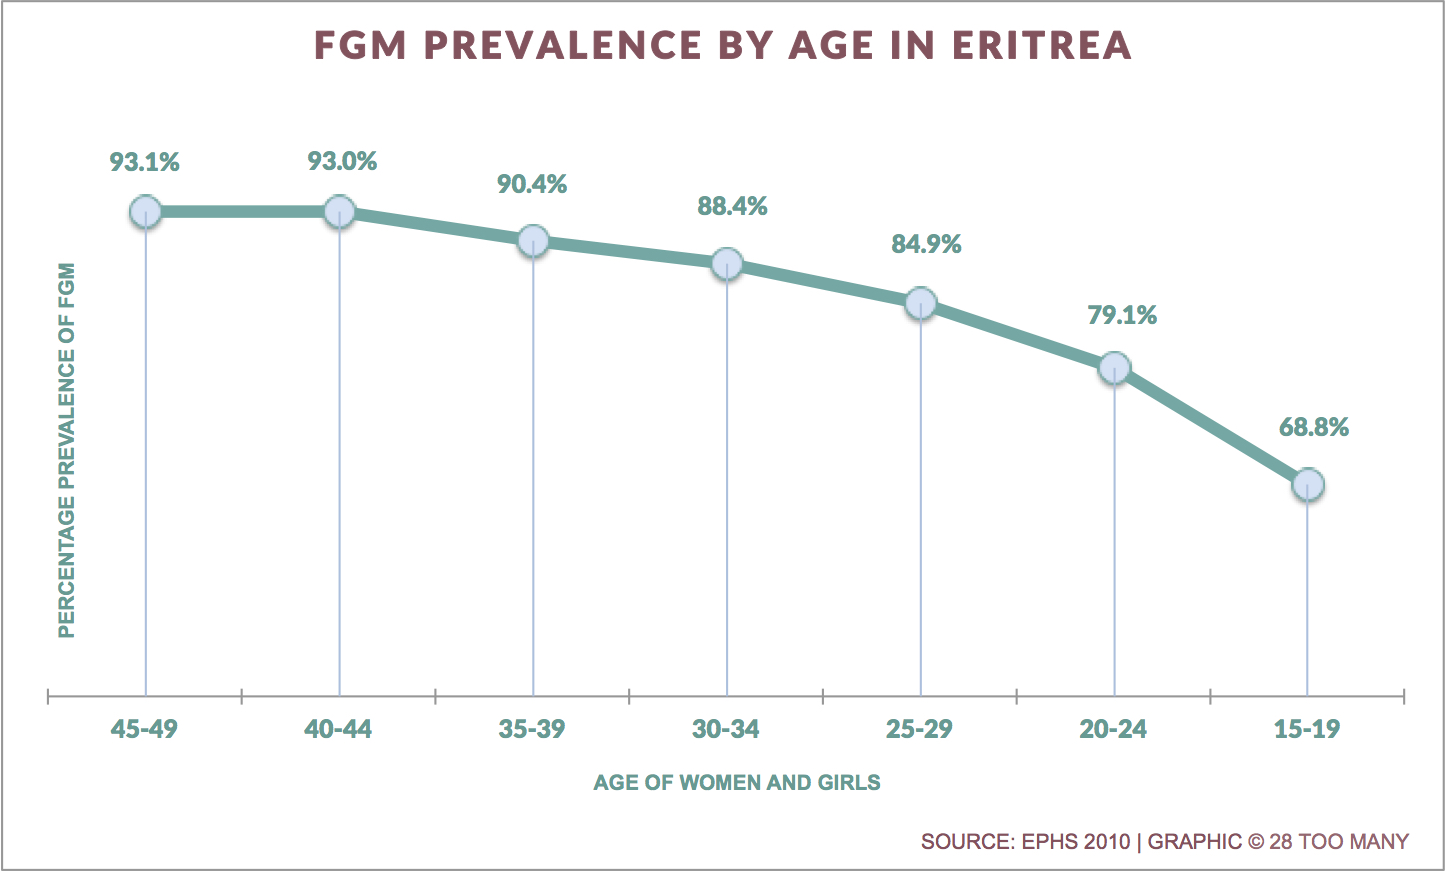 Trends in FGM/C Prevalence in Eritrea